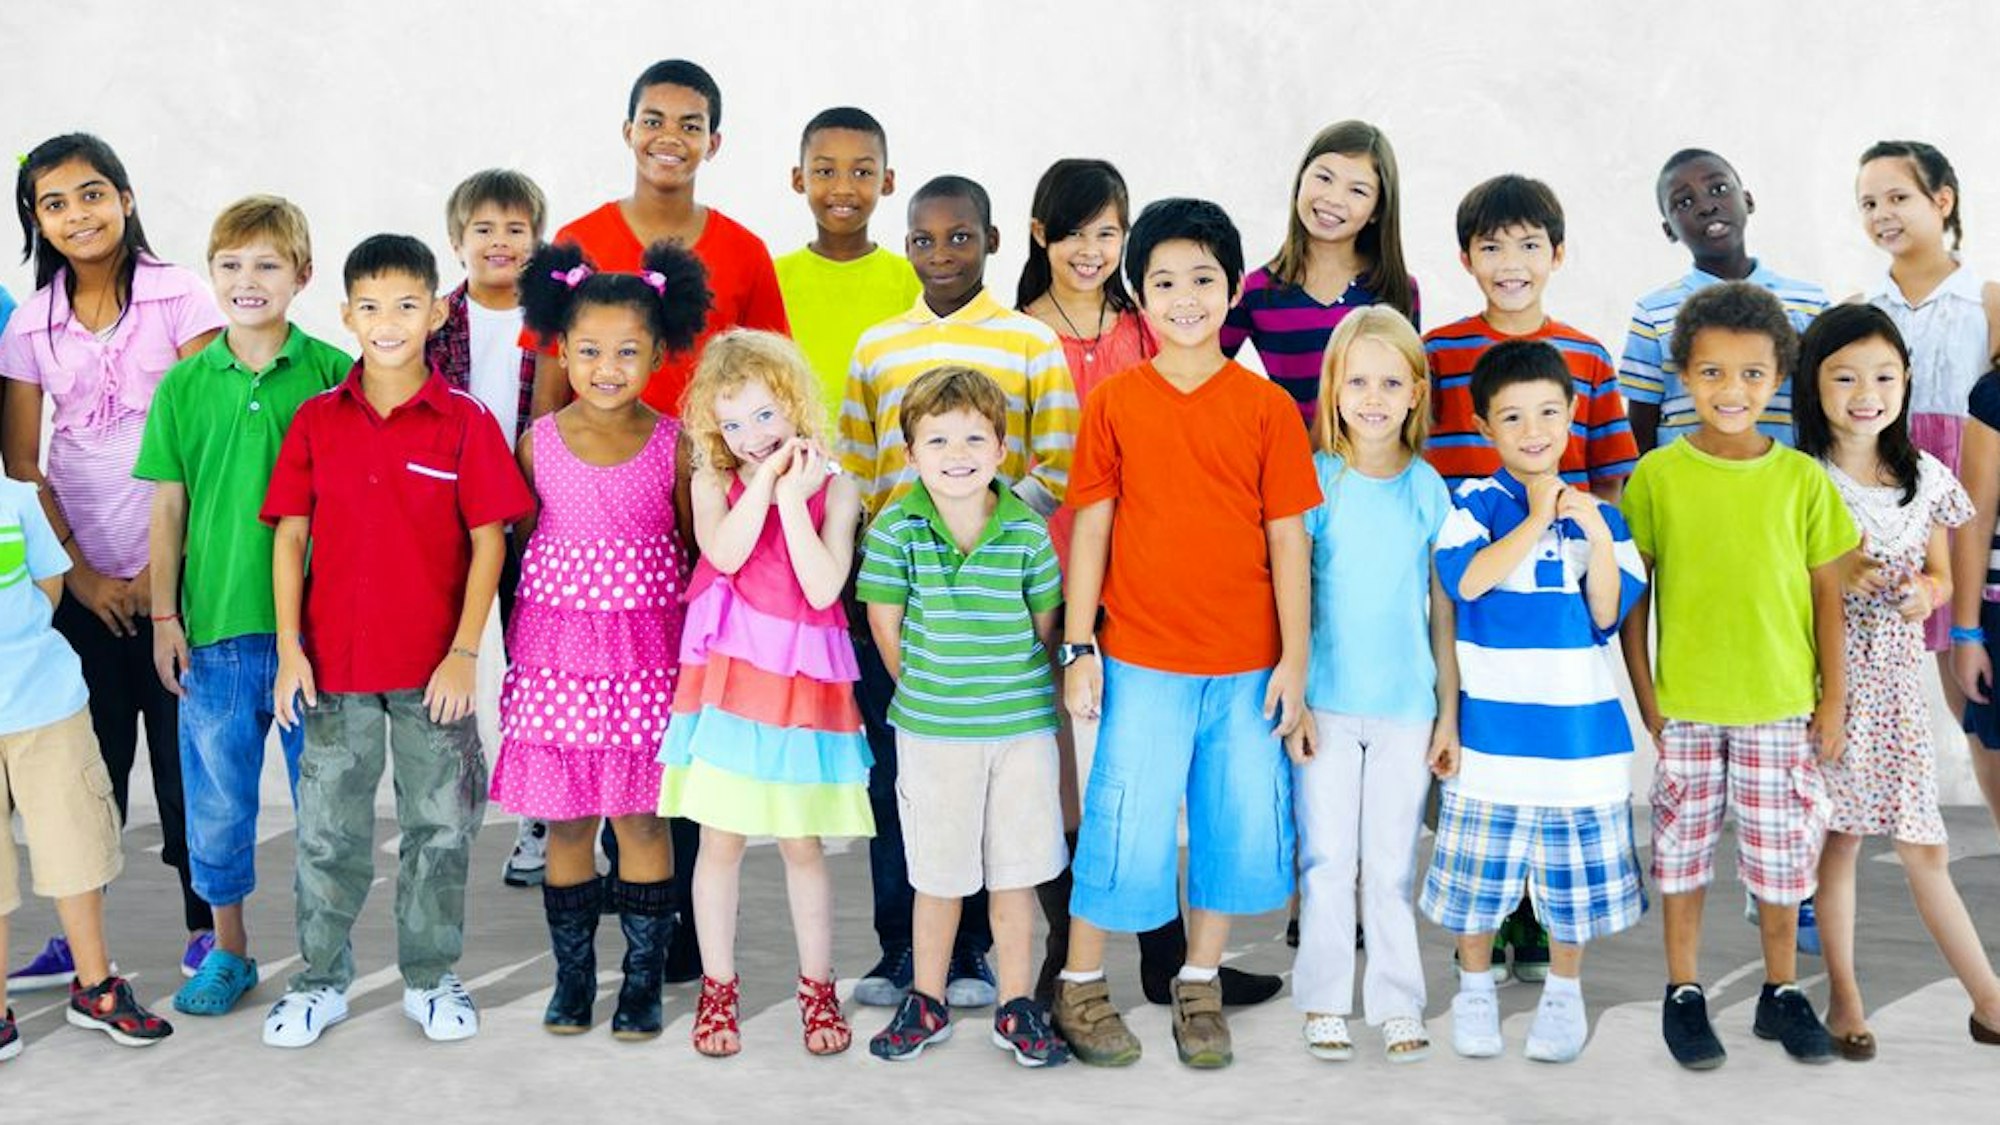 Eine große Gruppe von Kindern aus verschiedenen Herkunftsländern steht zusammen.